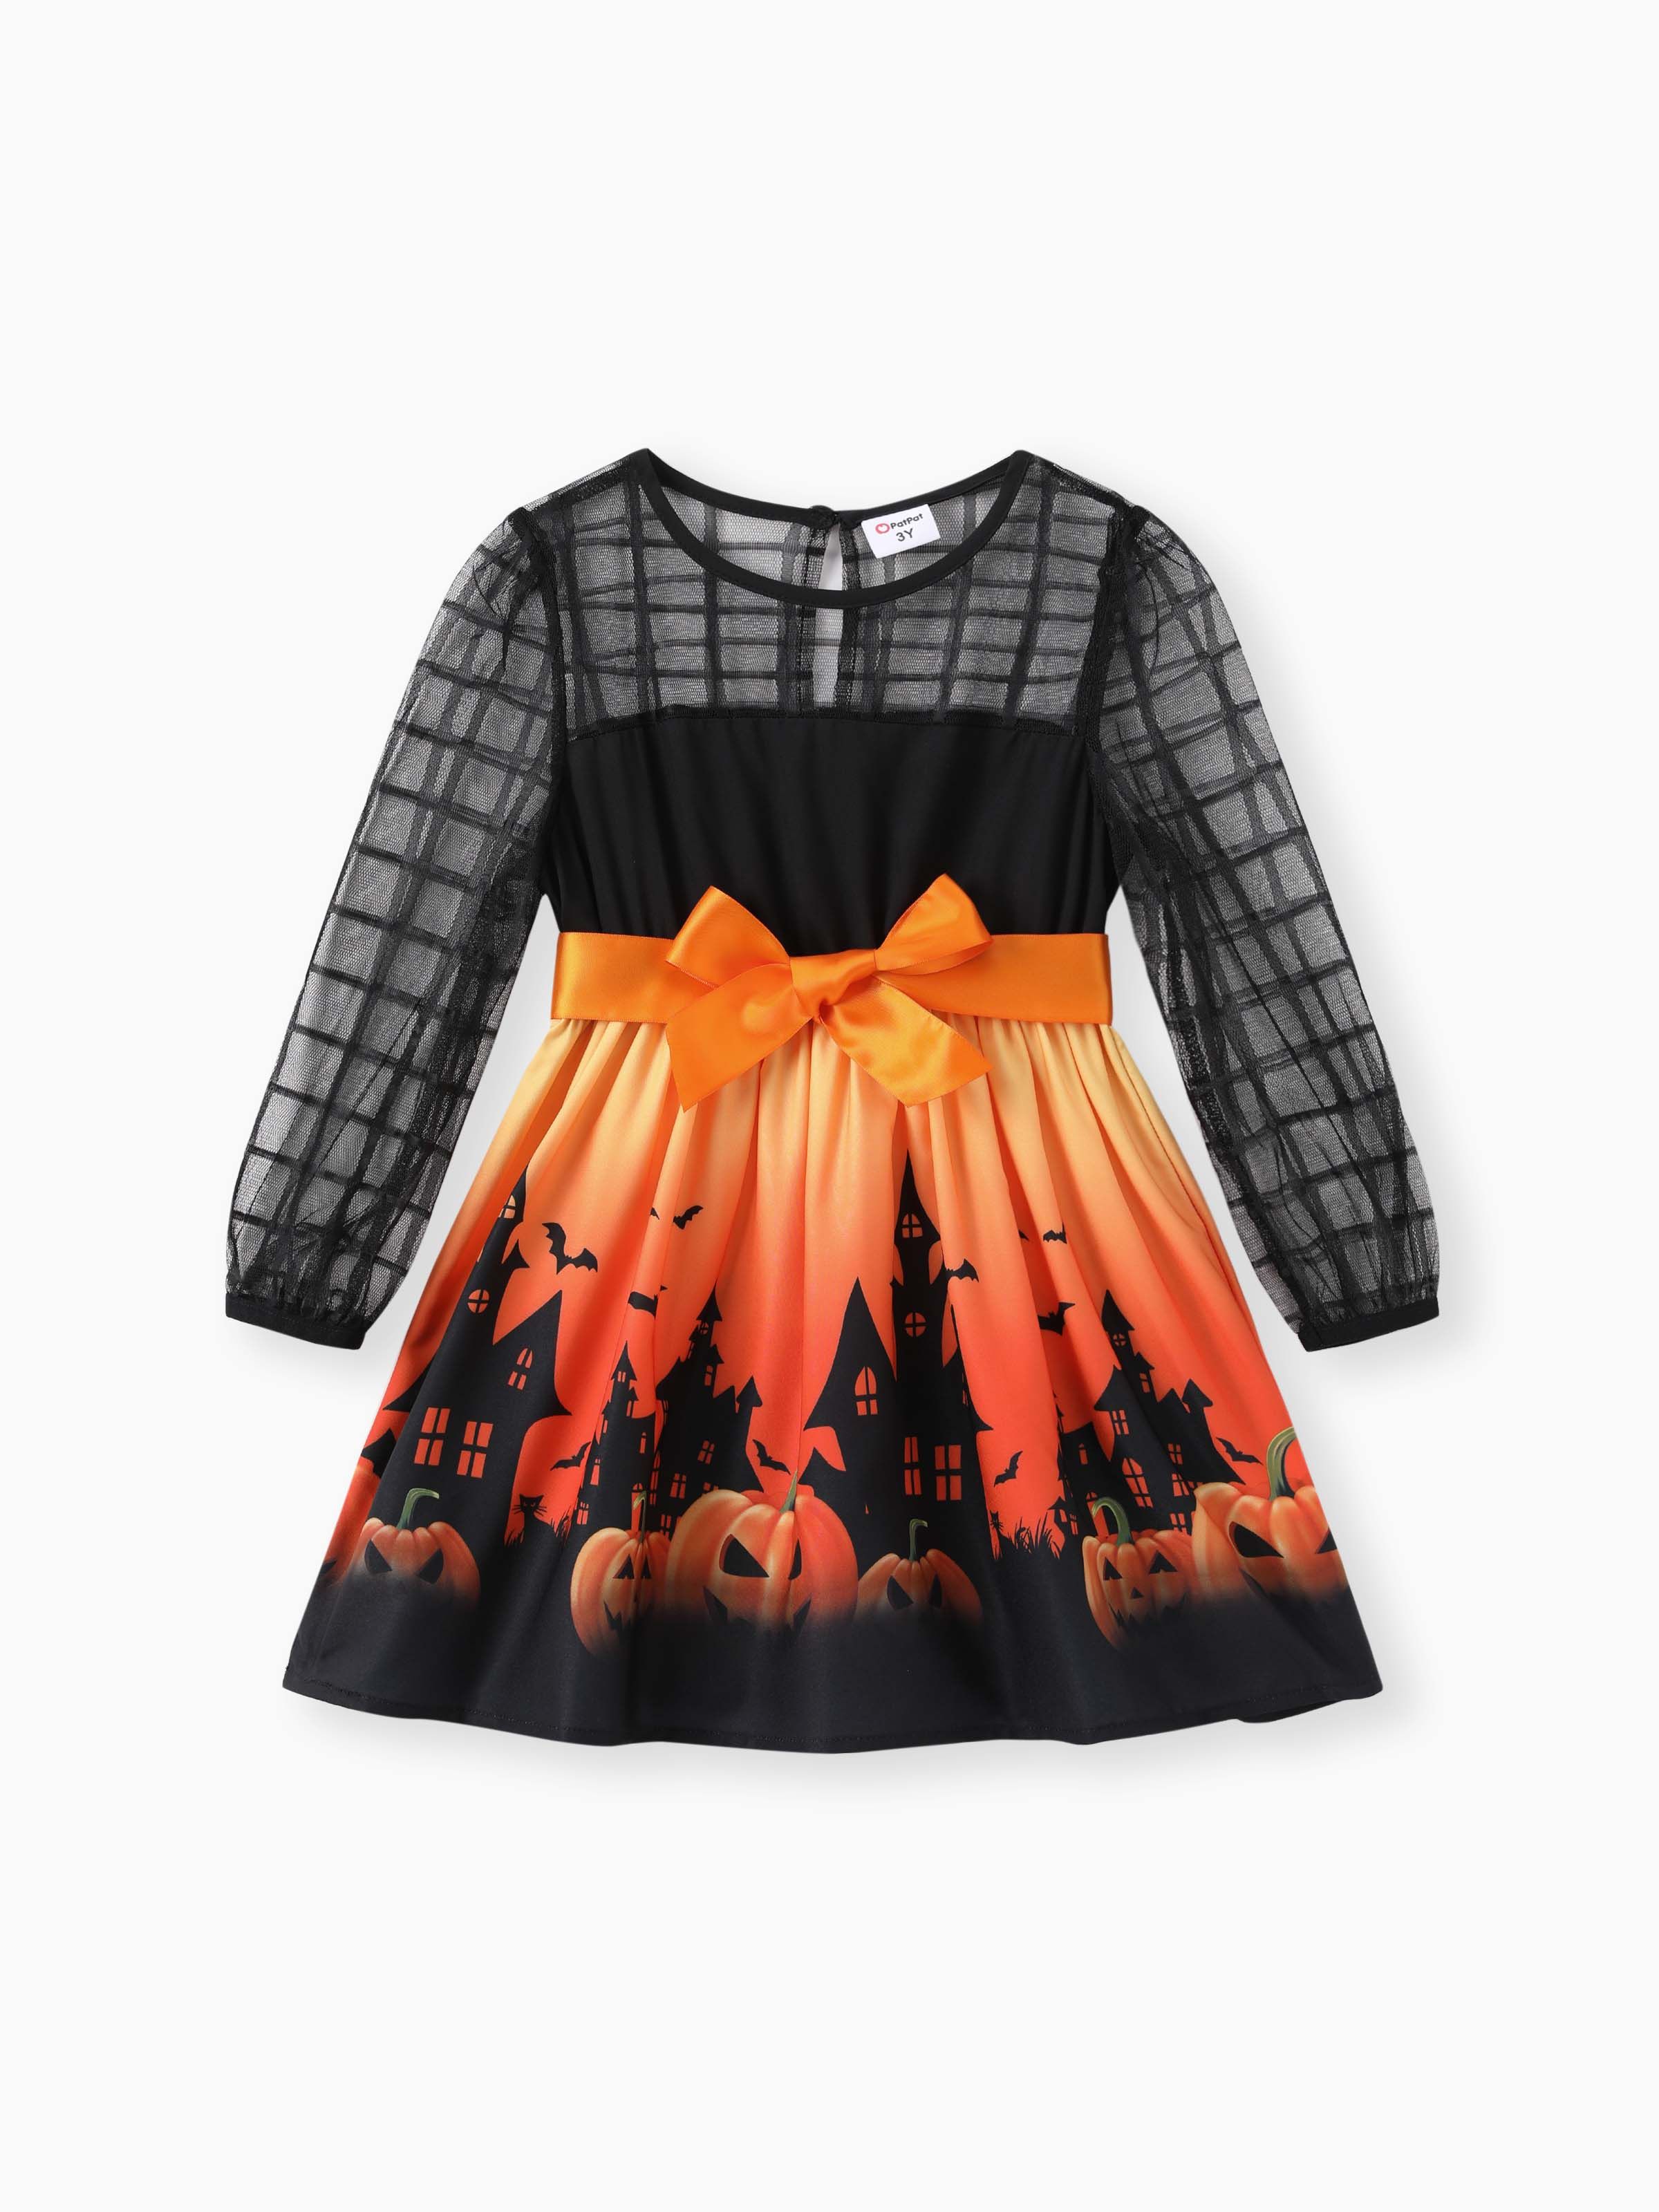 

Toddler/Kid Girl Halloween Pumpkin Print Mesh Dress